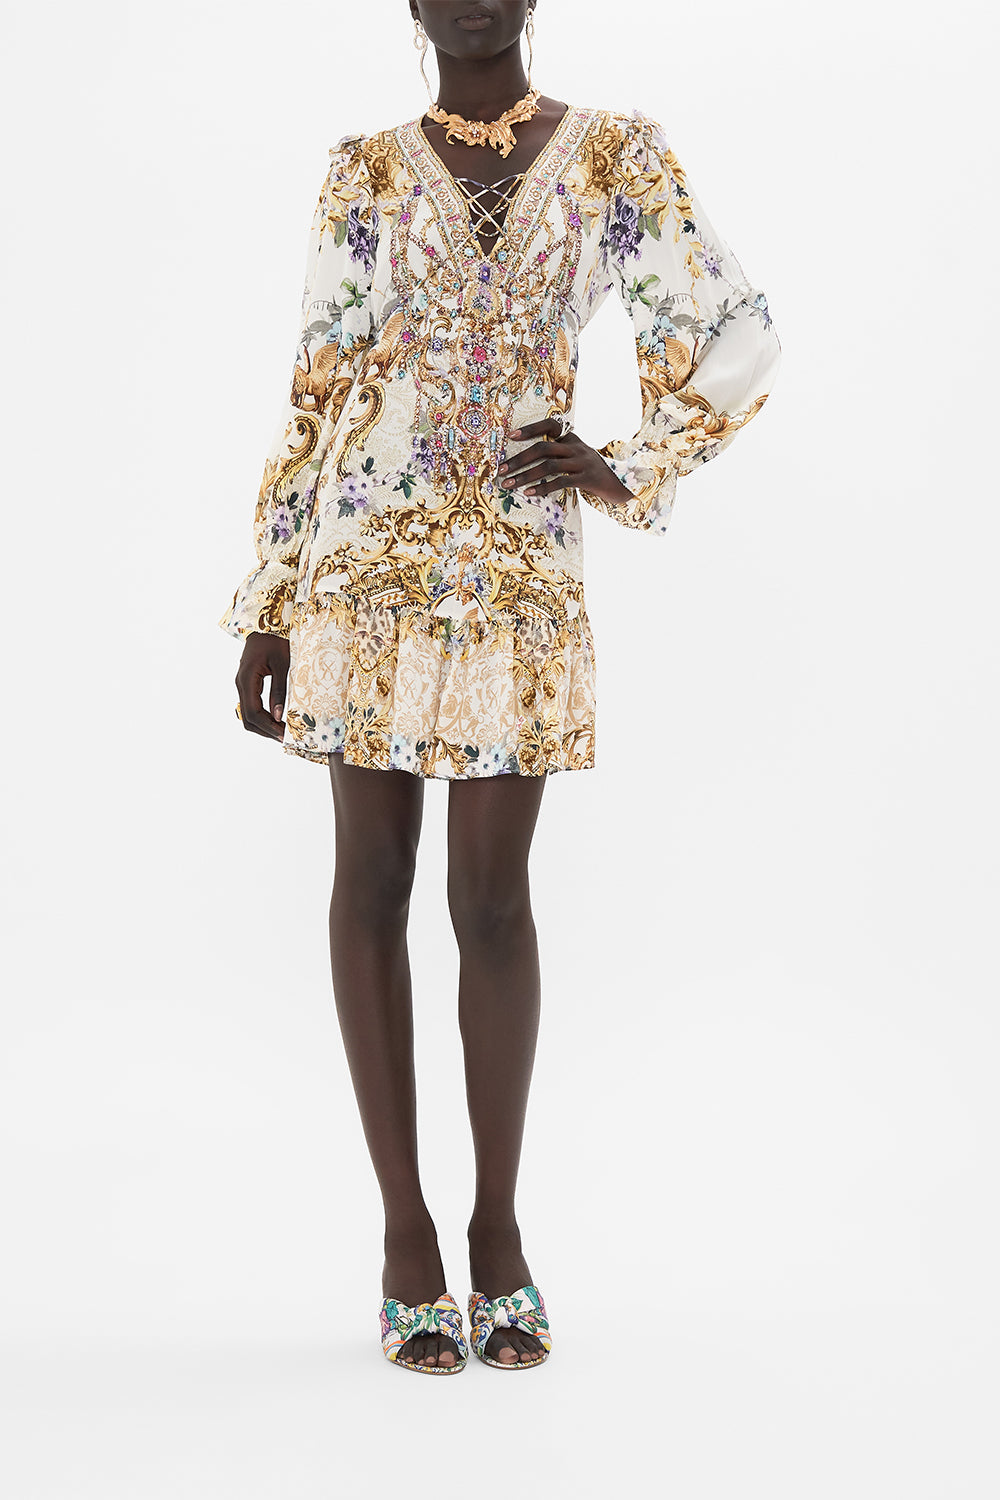 Ruffle Lace Up Dress, Palazzo Play Date | CAMILLA AU – CAMILLA